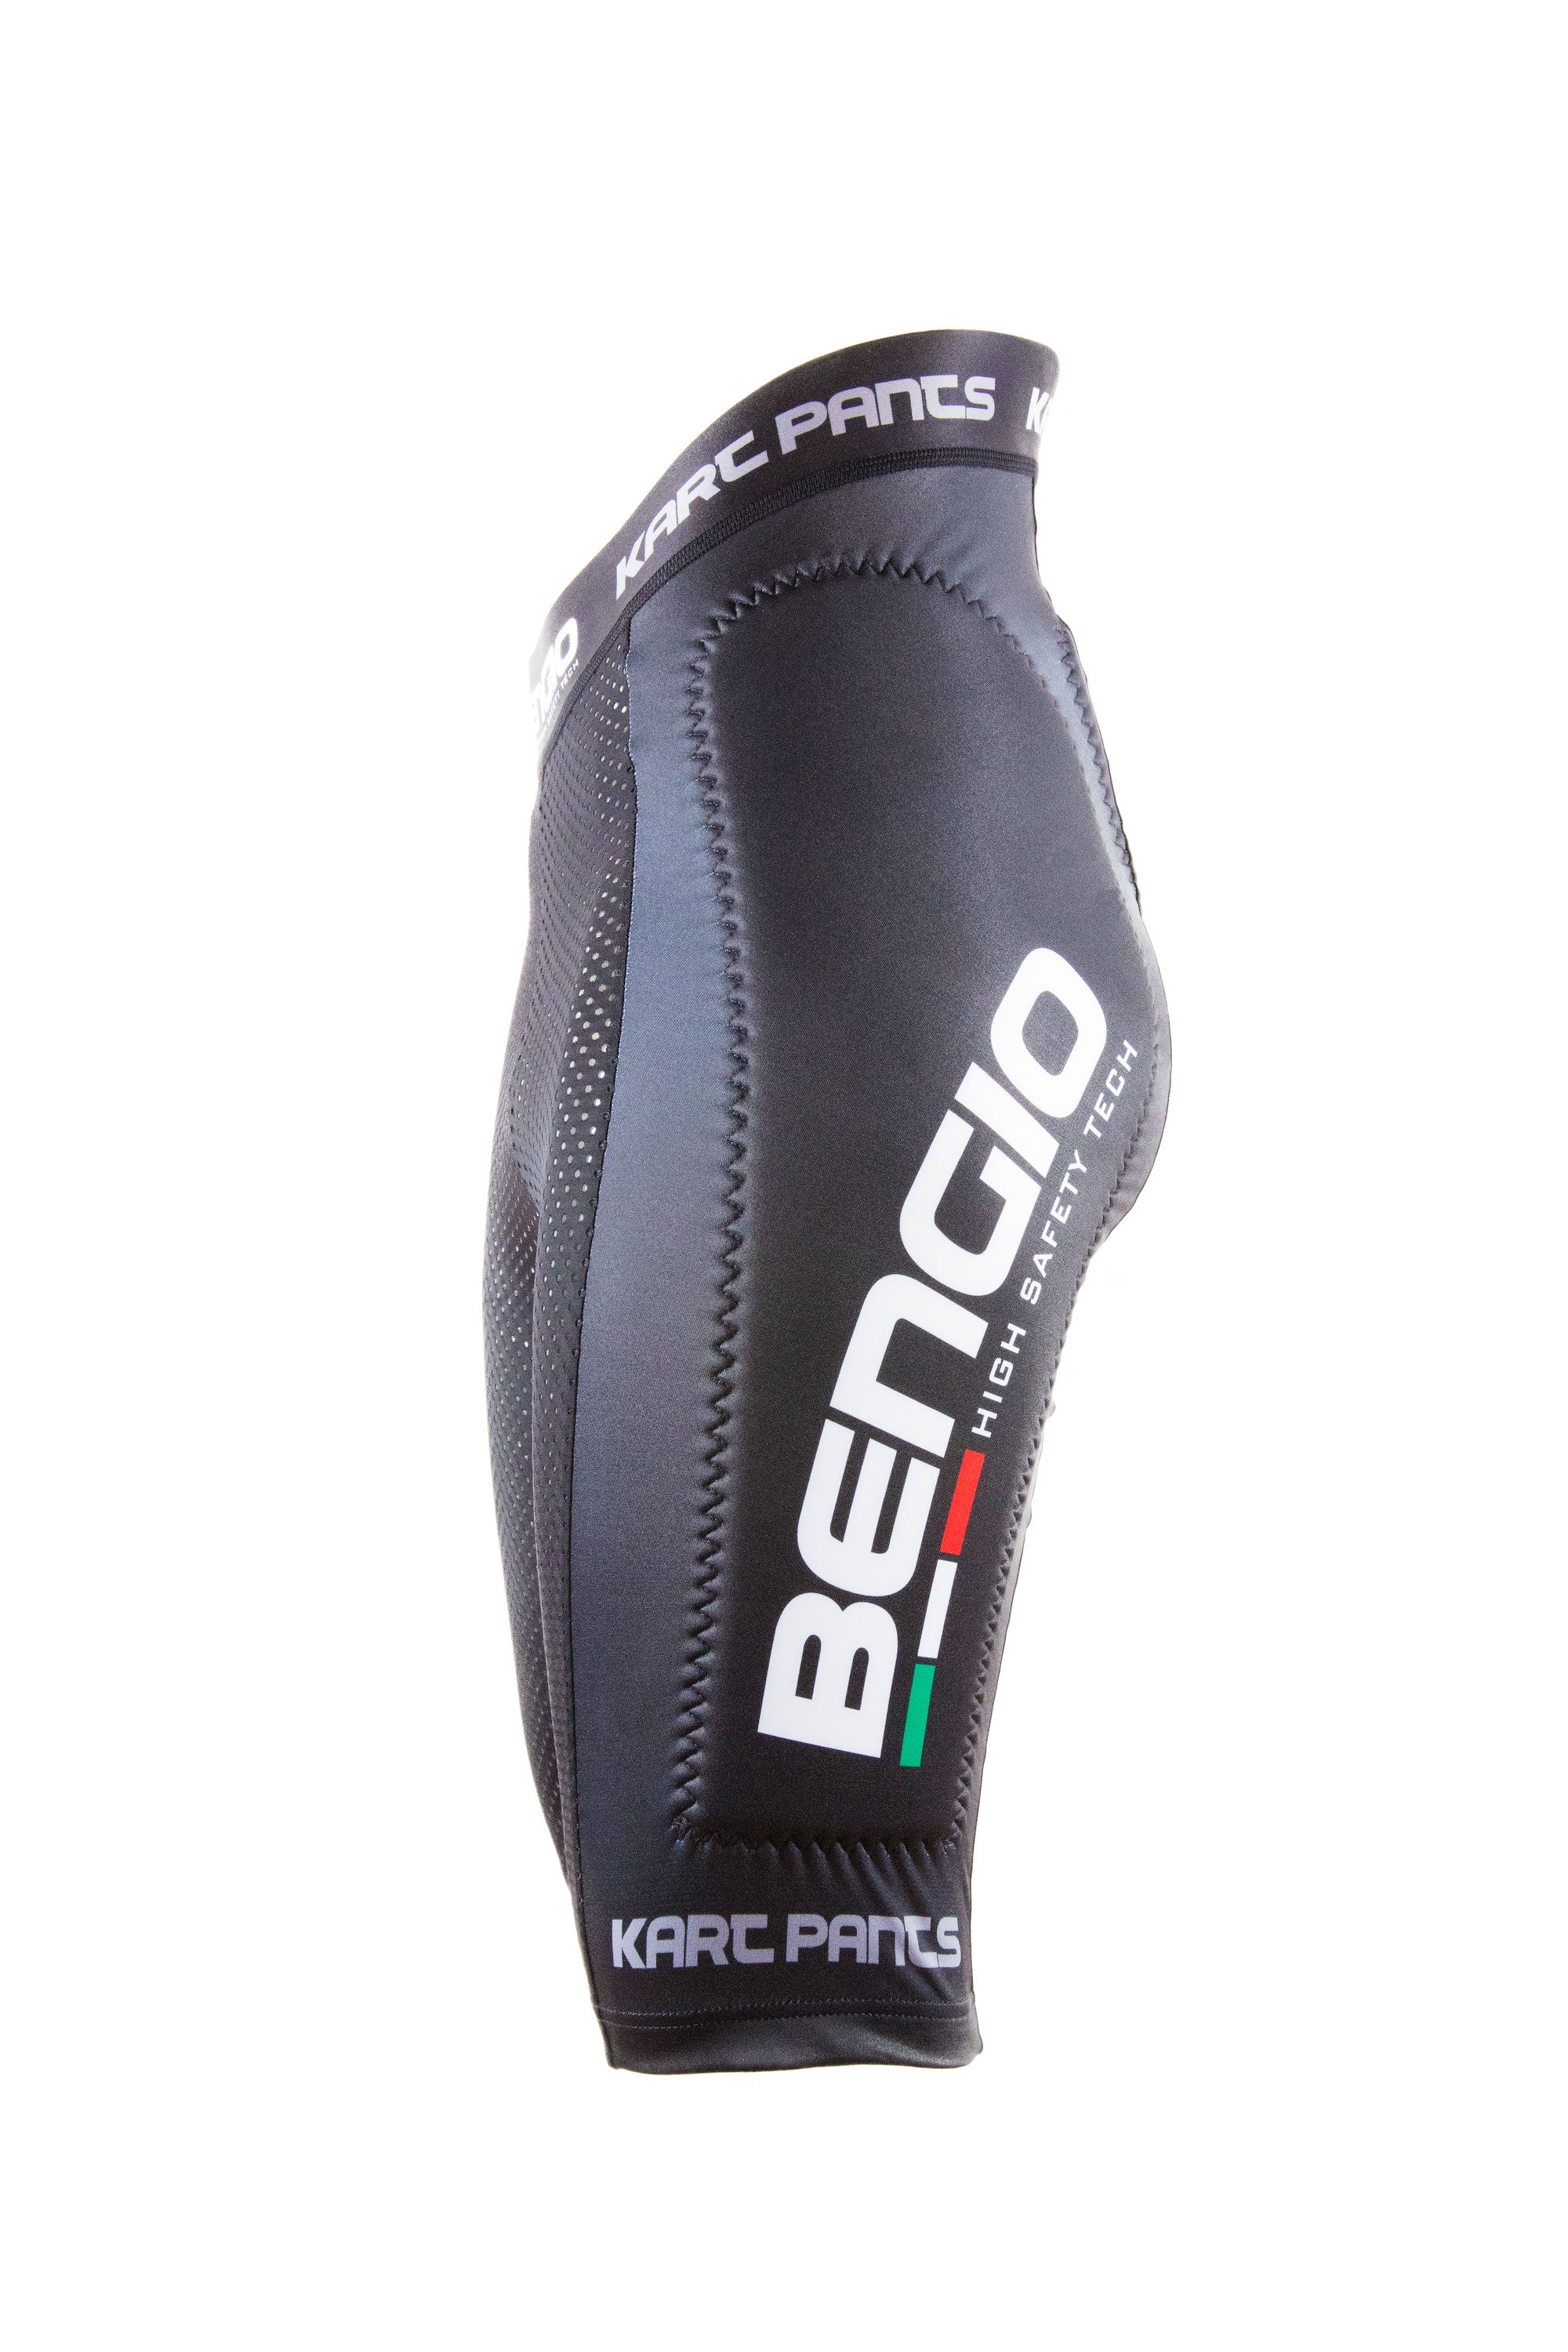 Bengio Pntm захисні штани / підштаники для картингу, чорний, р-р M Photo-4 